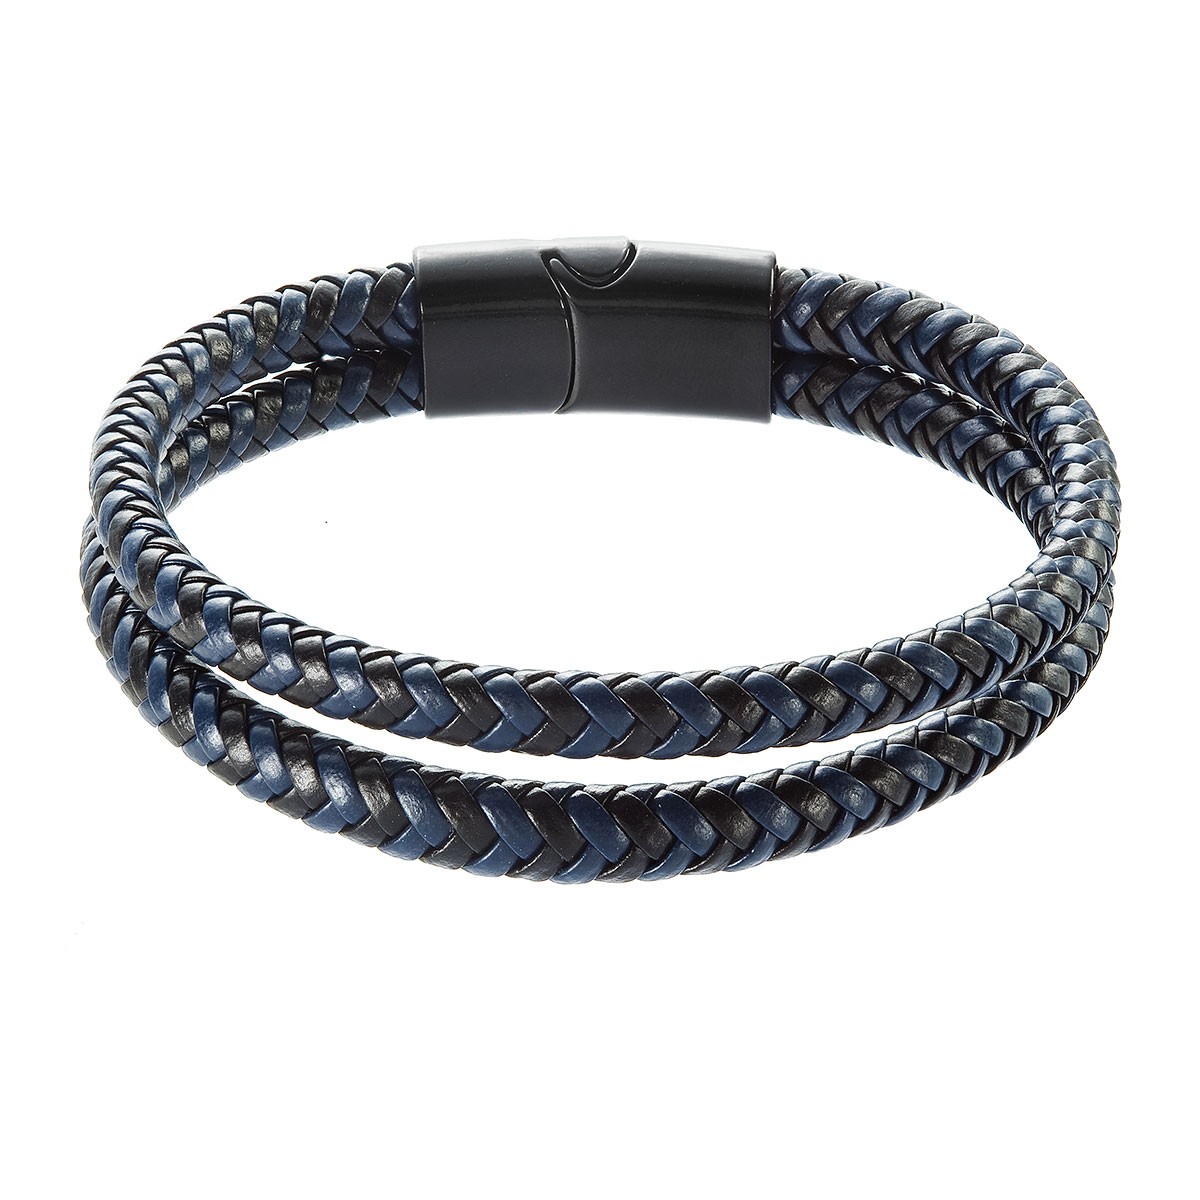 Evolution Group Náramek pánský s koženkovými pásky a sponou na magnet 43035.3 černý/modrý